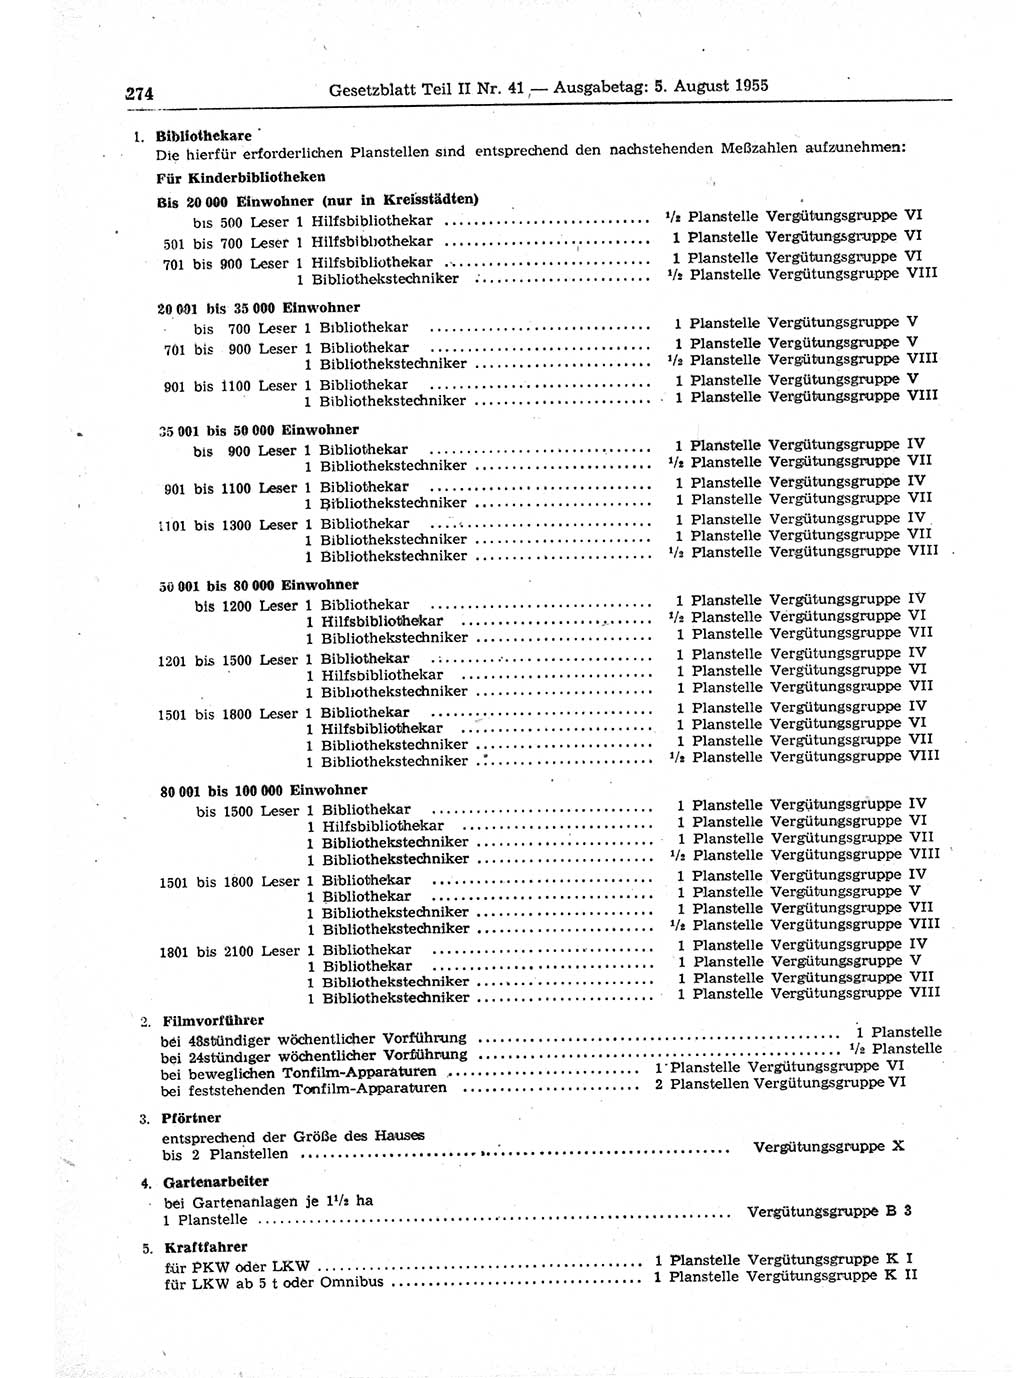 Gesetzblatt (GBl.) der Deutschen Demokratischen Republik (DDR) Teil ⅠⅠ 1955, Seite 274 (GBl. DDR ⅠⅠ 1955, S. 274)